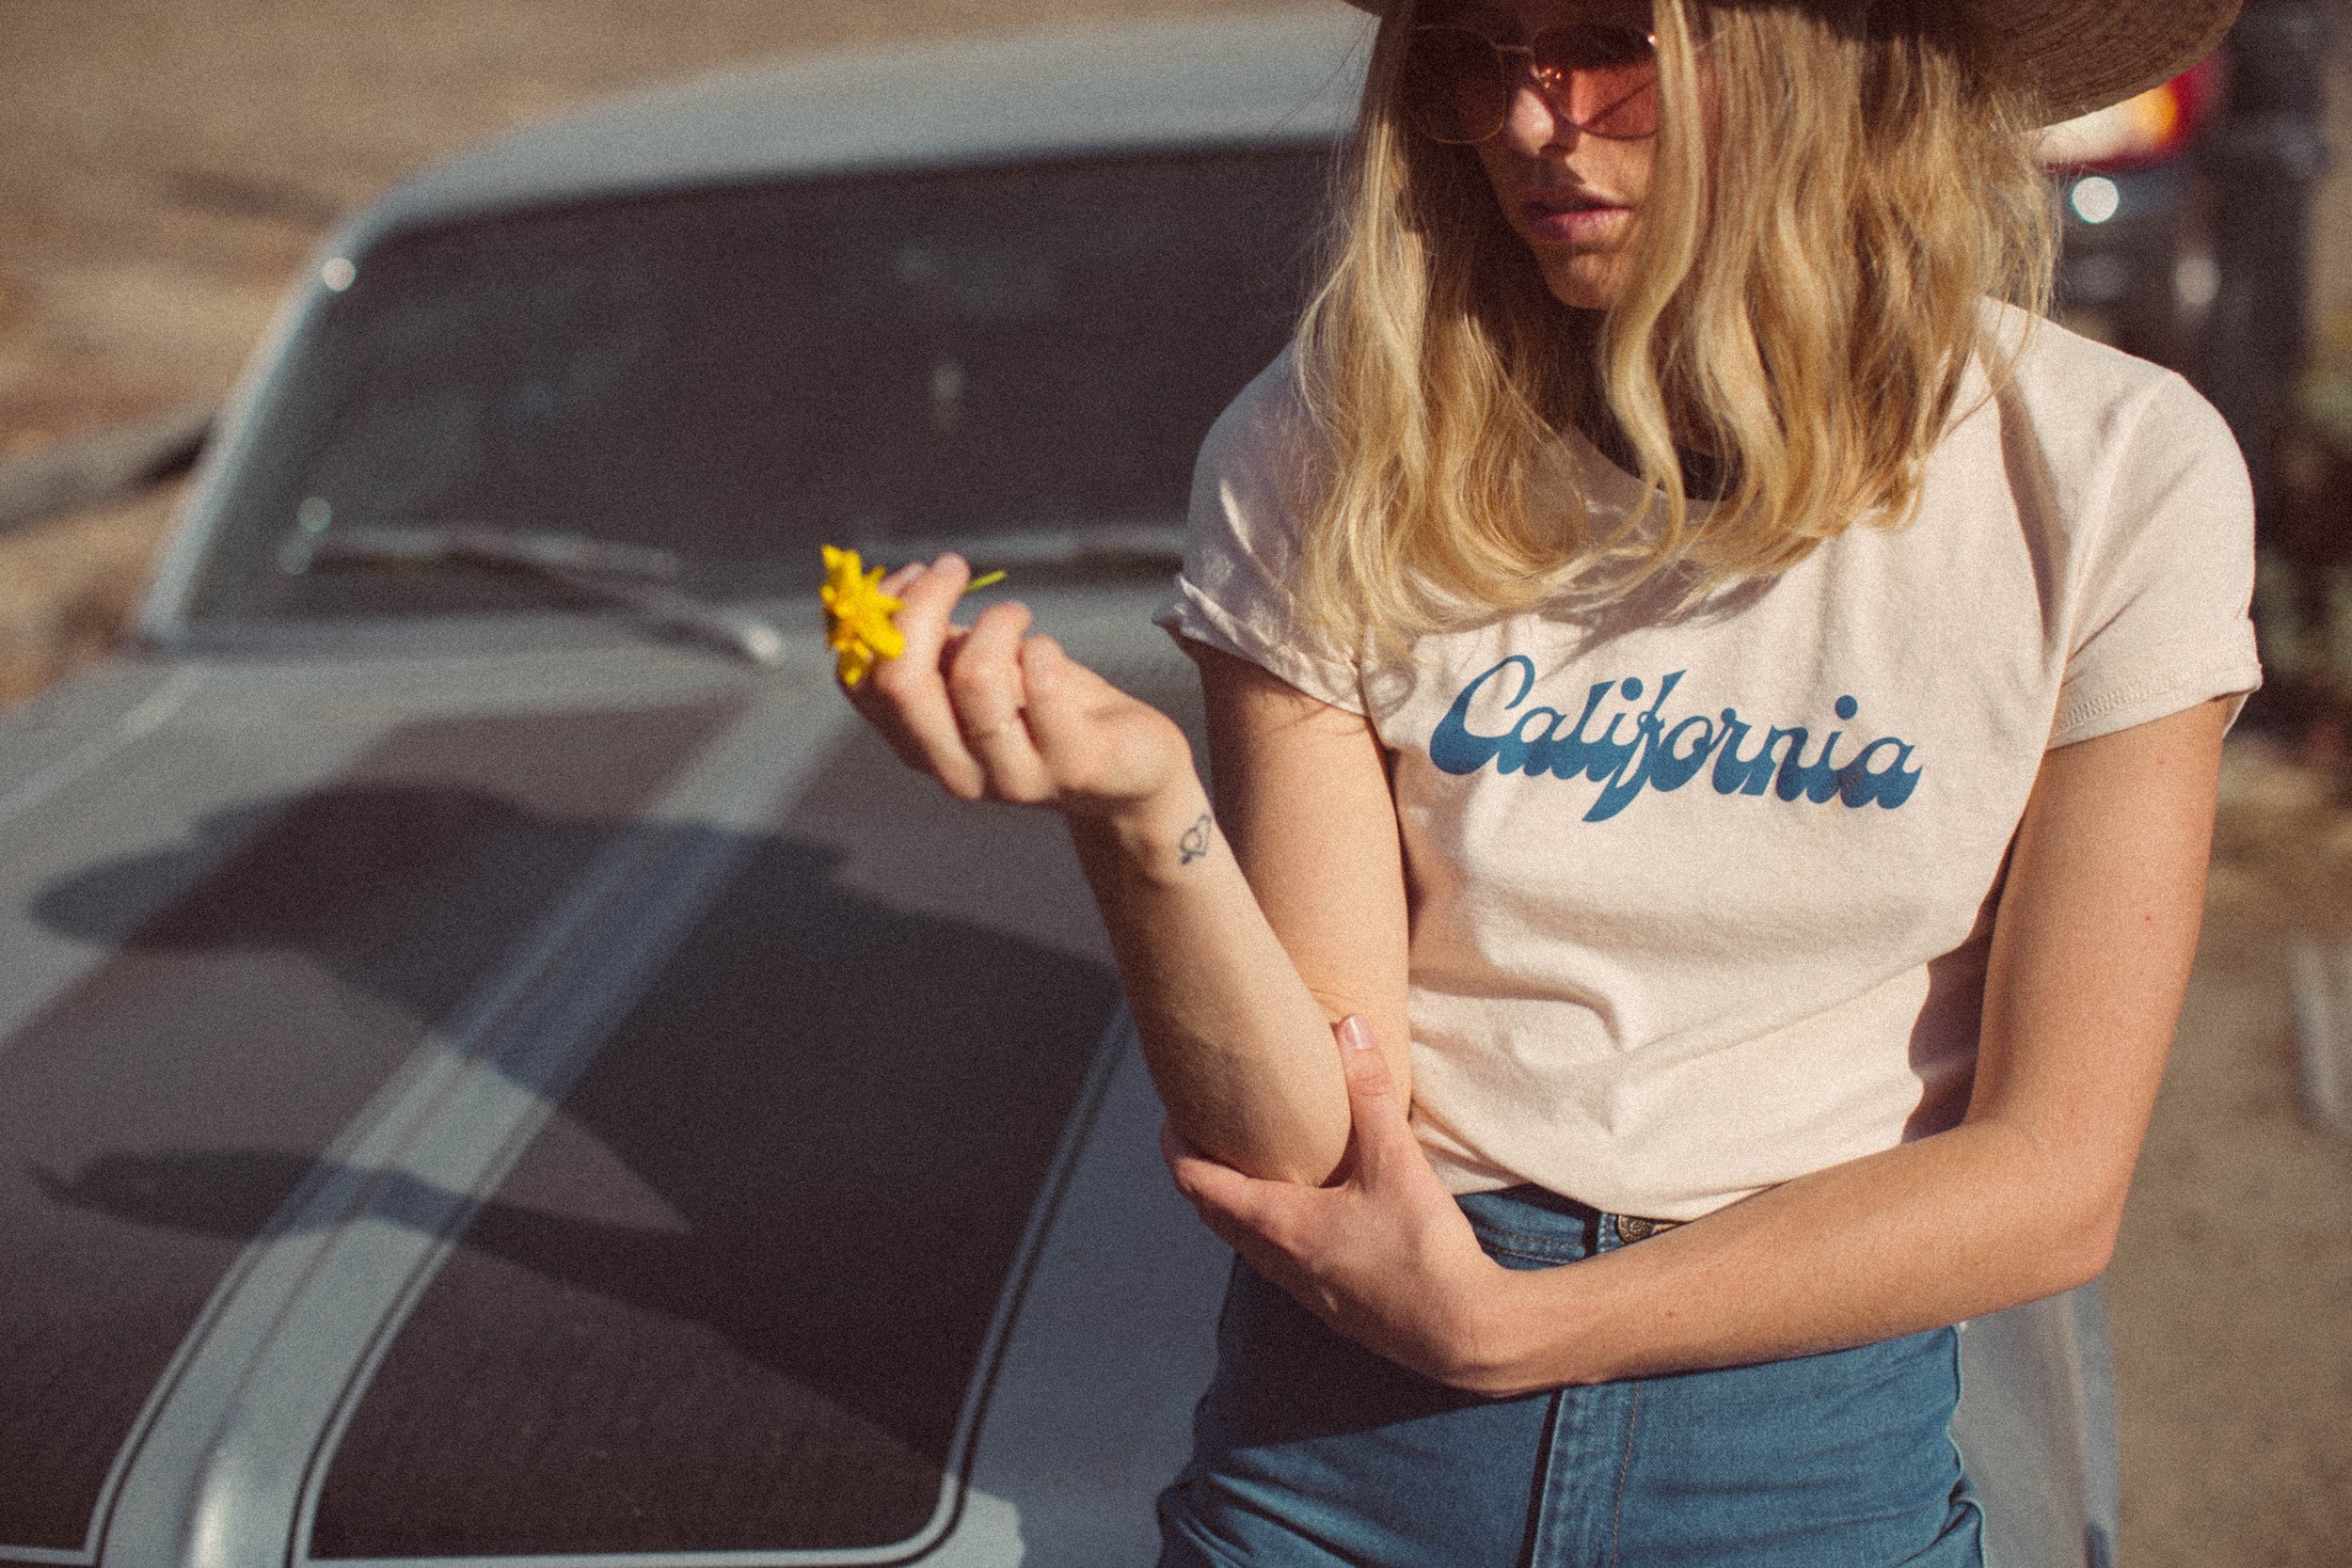 Afbeelding van een model zittend op een auto met een T-shirt aan met daarop de tekst "California"